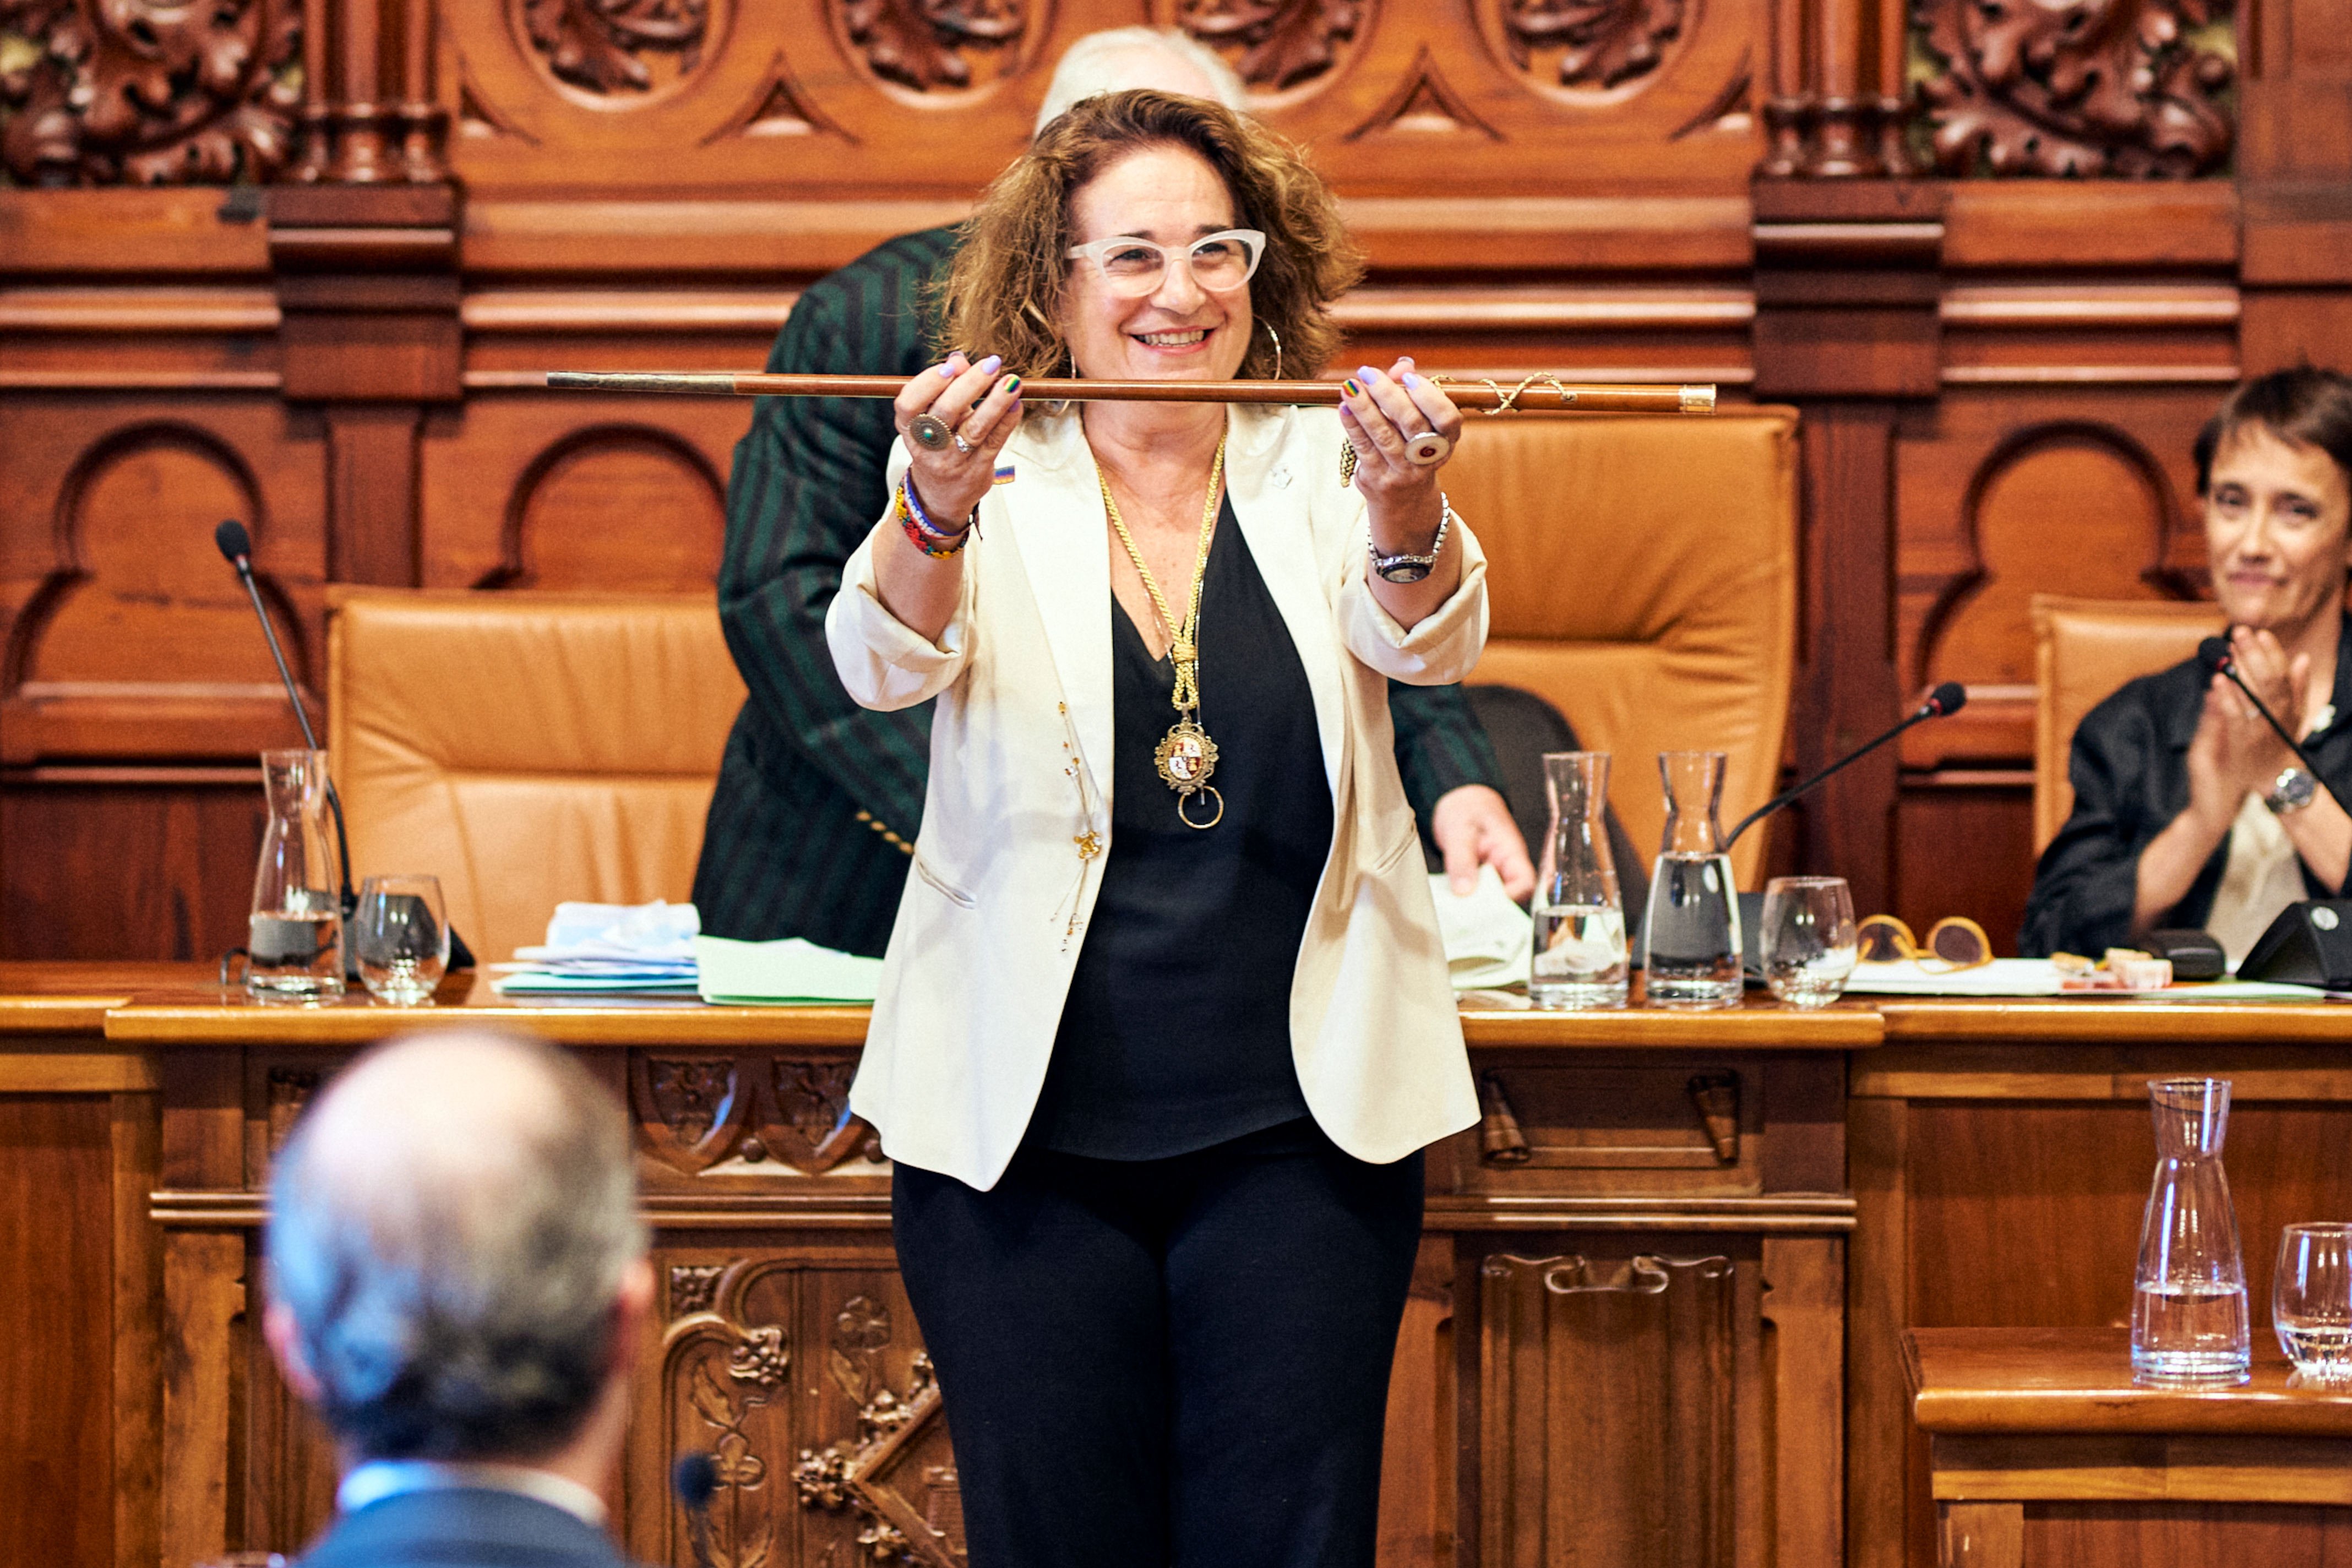 L'alcaldessa de Sitges, sobre la seva detenció: "Vivim el moment amb voluntat de transparència"